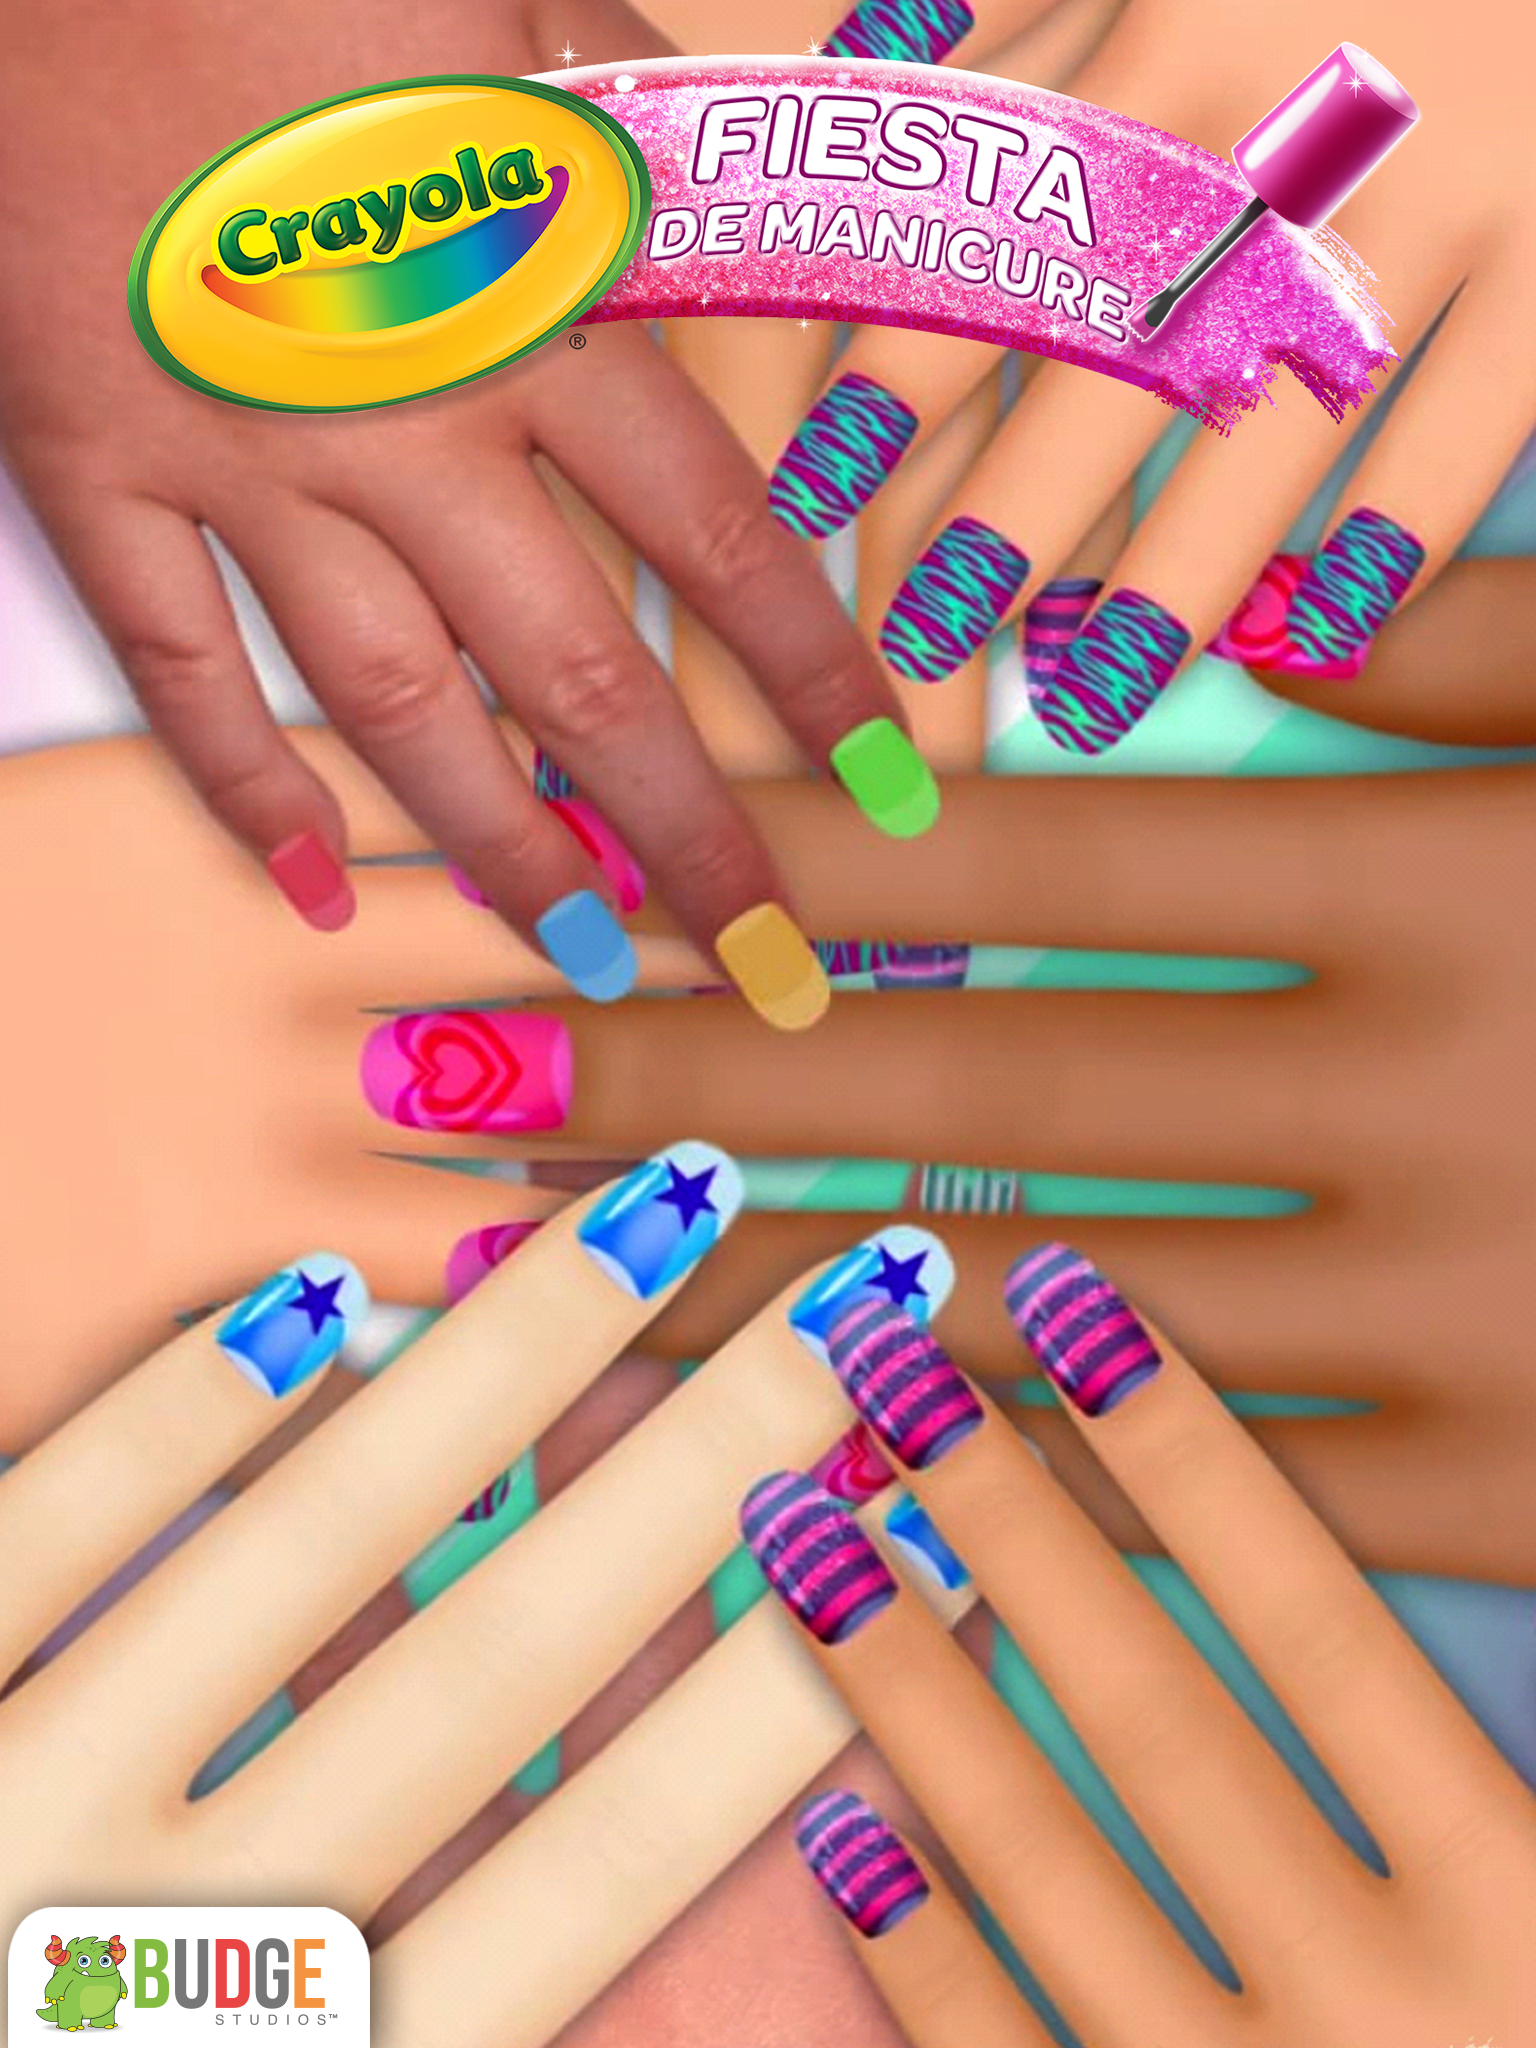 Android application Crayola Nail Party: Nail Salon screenshort